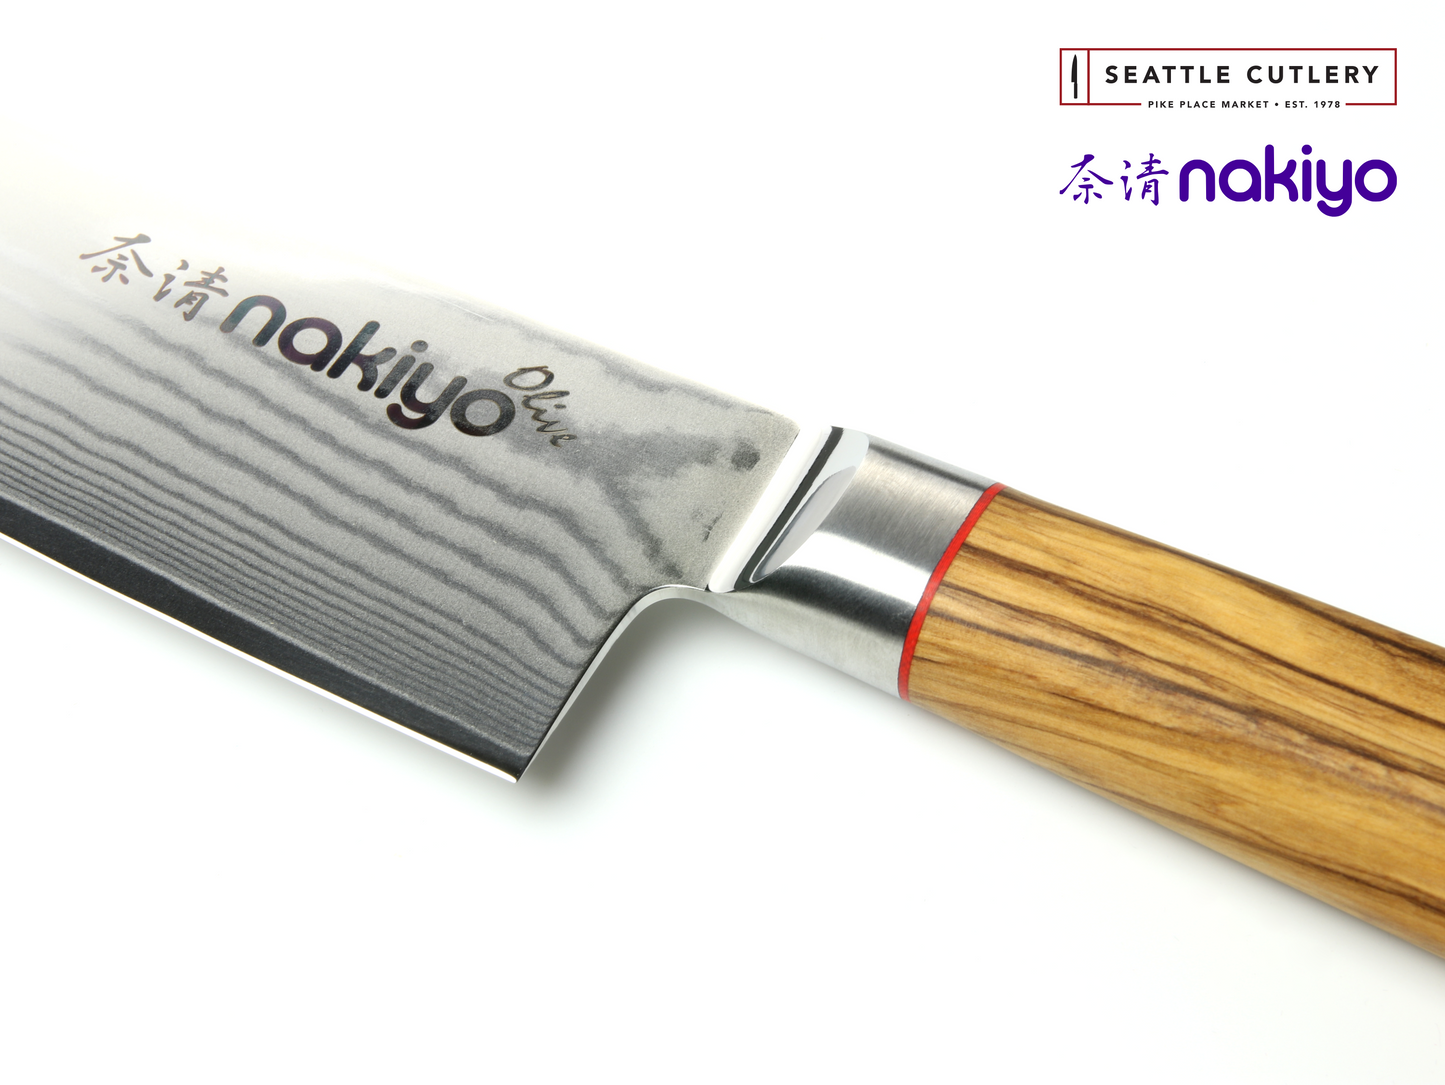 Nakiyo Olive 5" Serrated Utility Knife